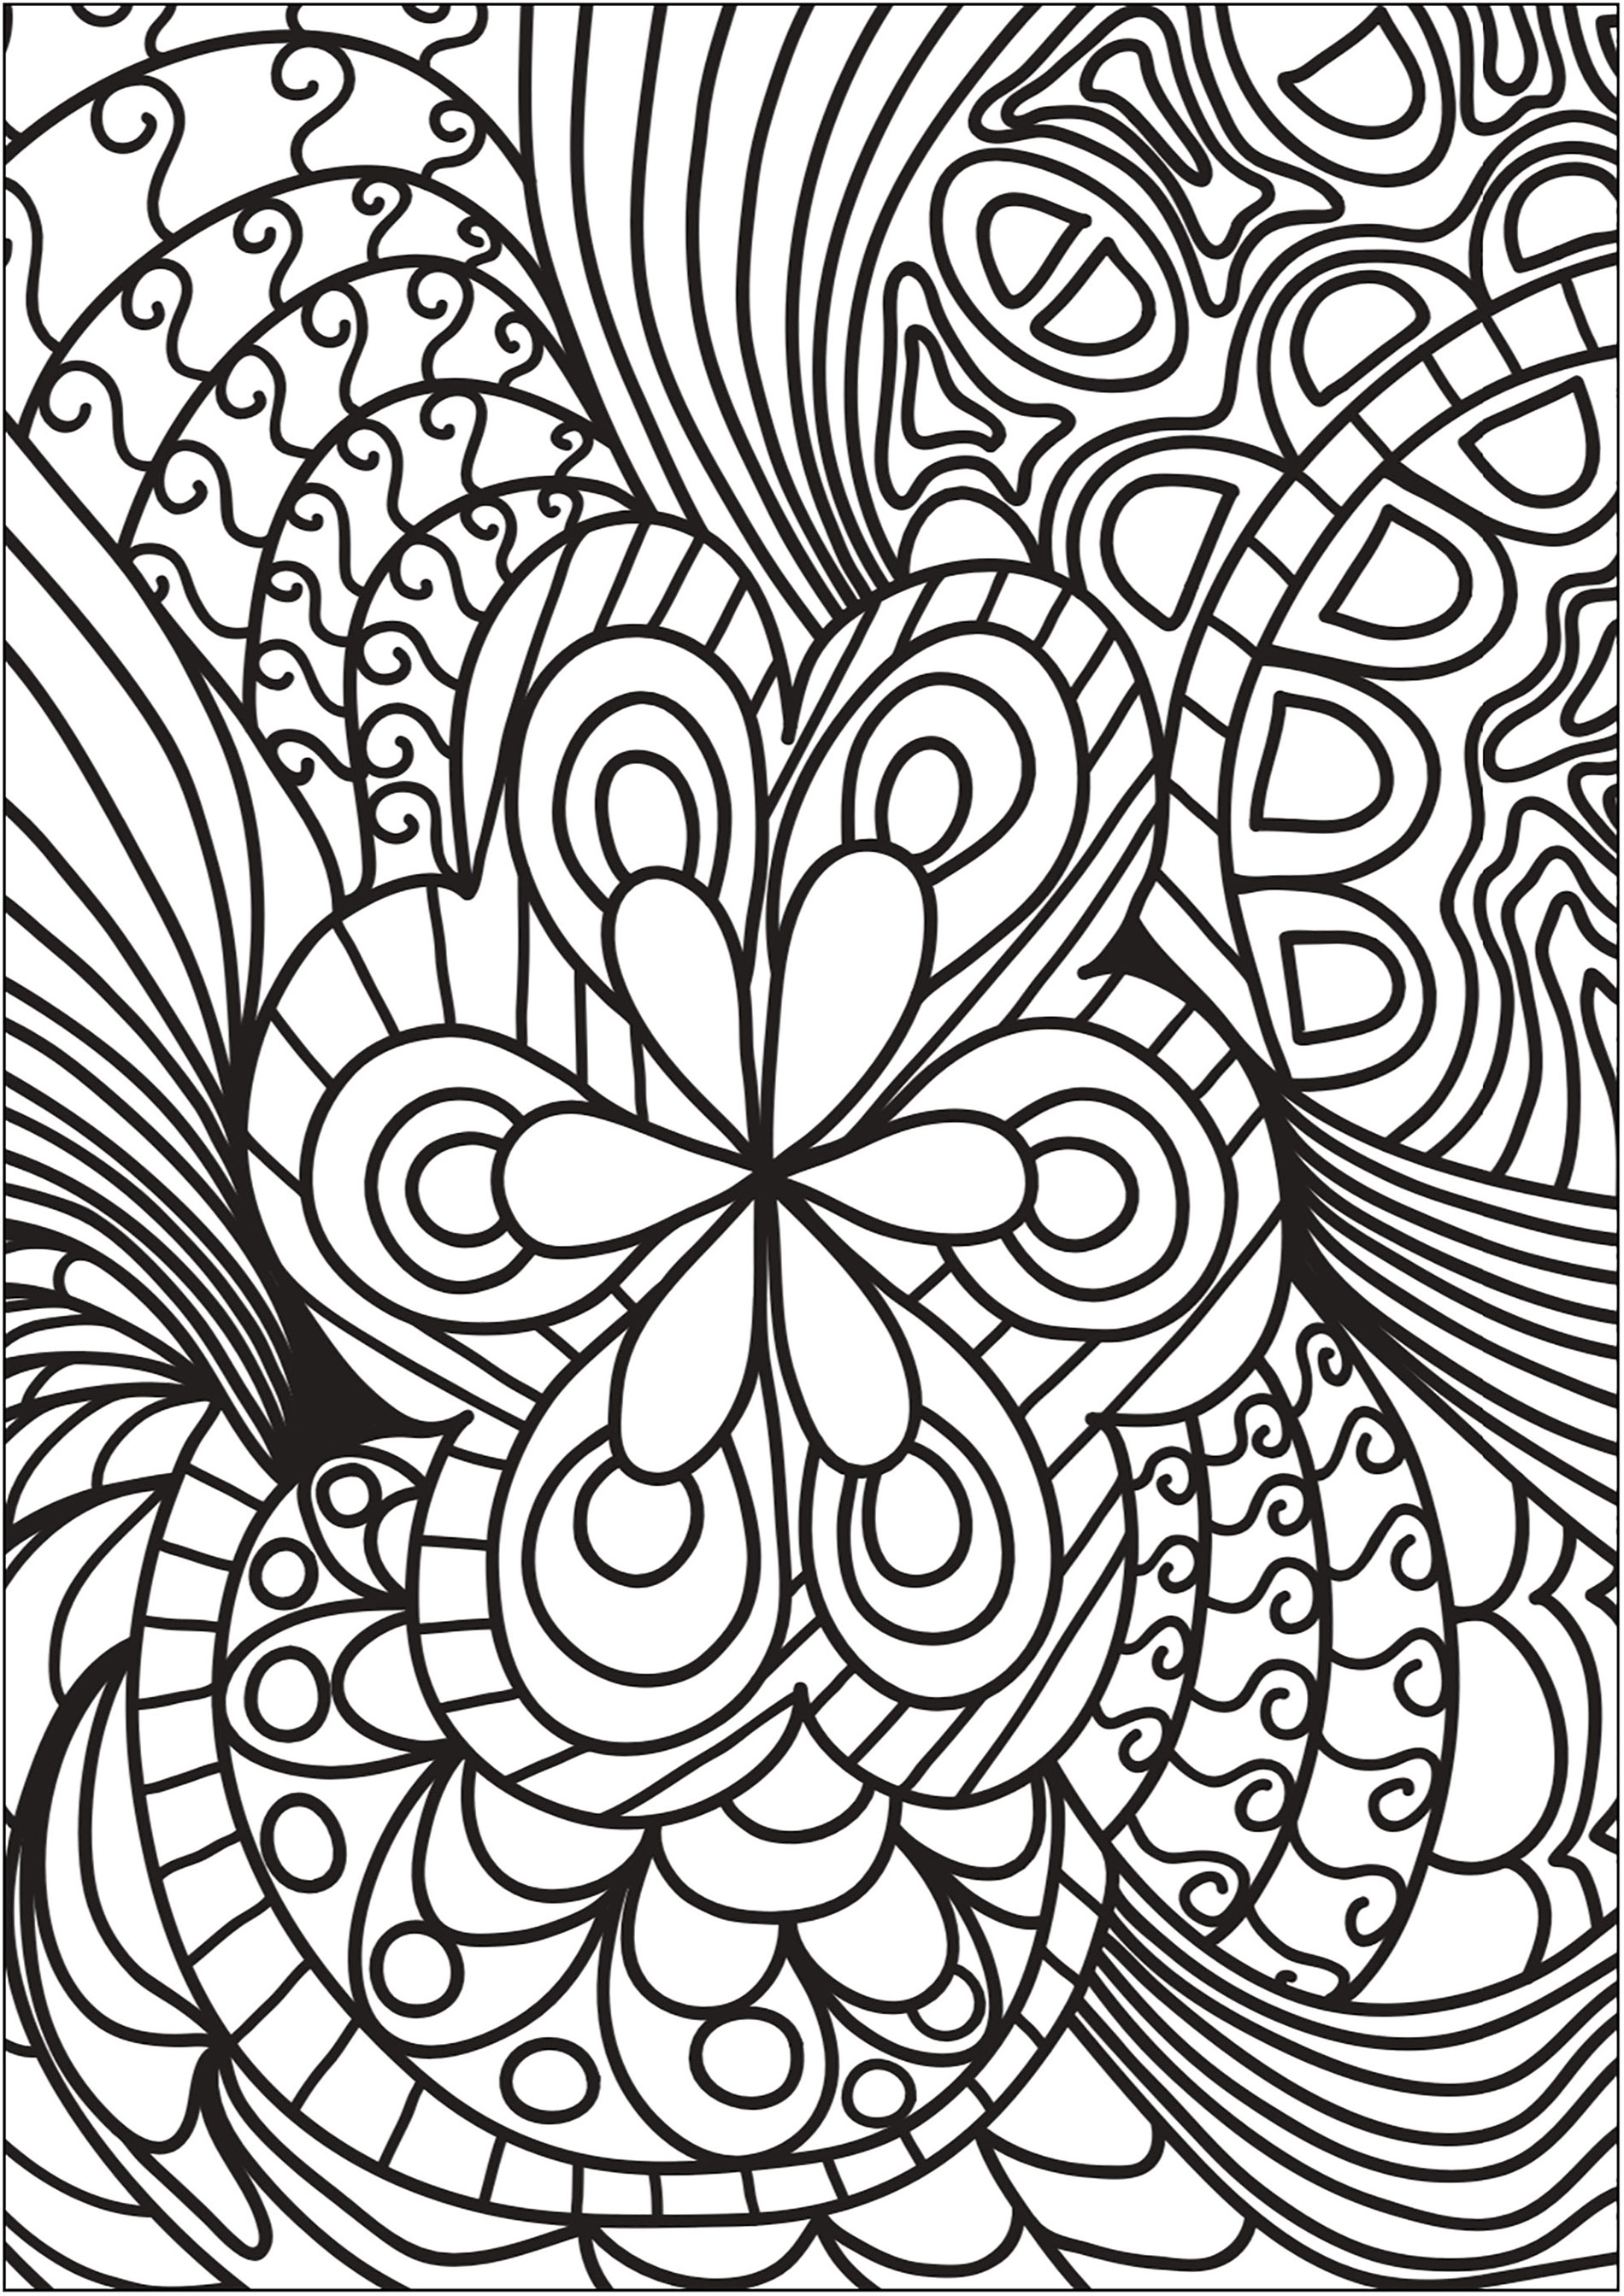 Joli Doodle avec une fleur centrale